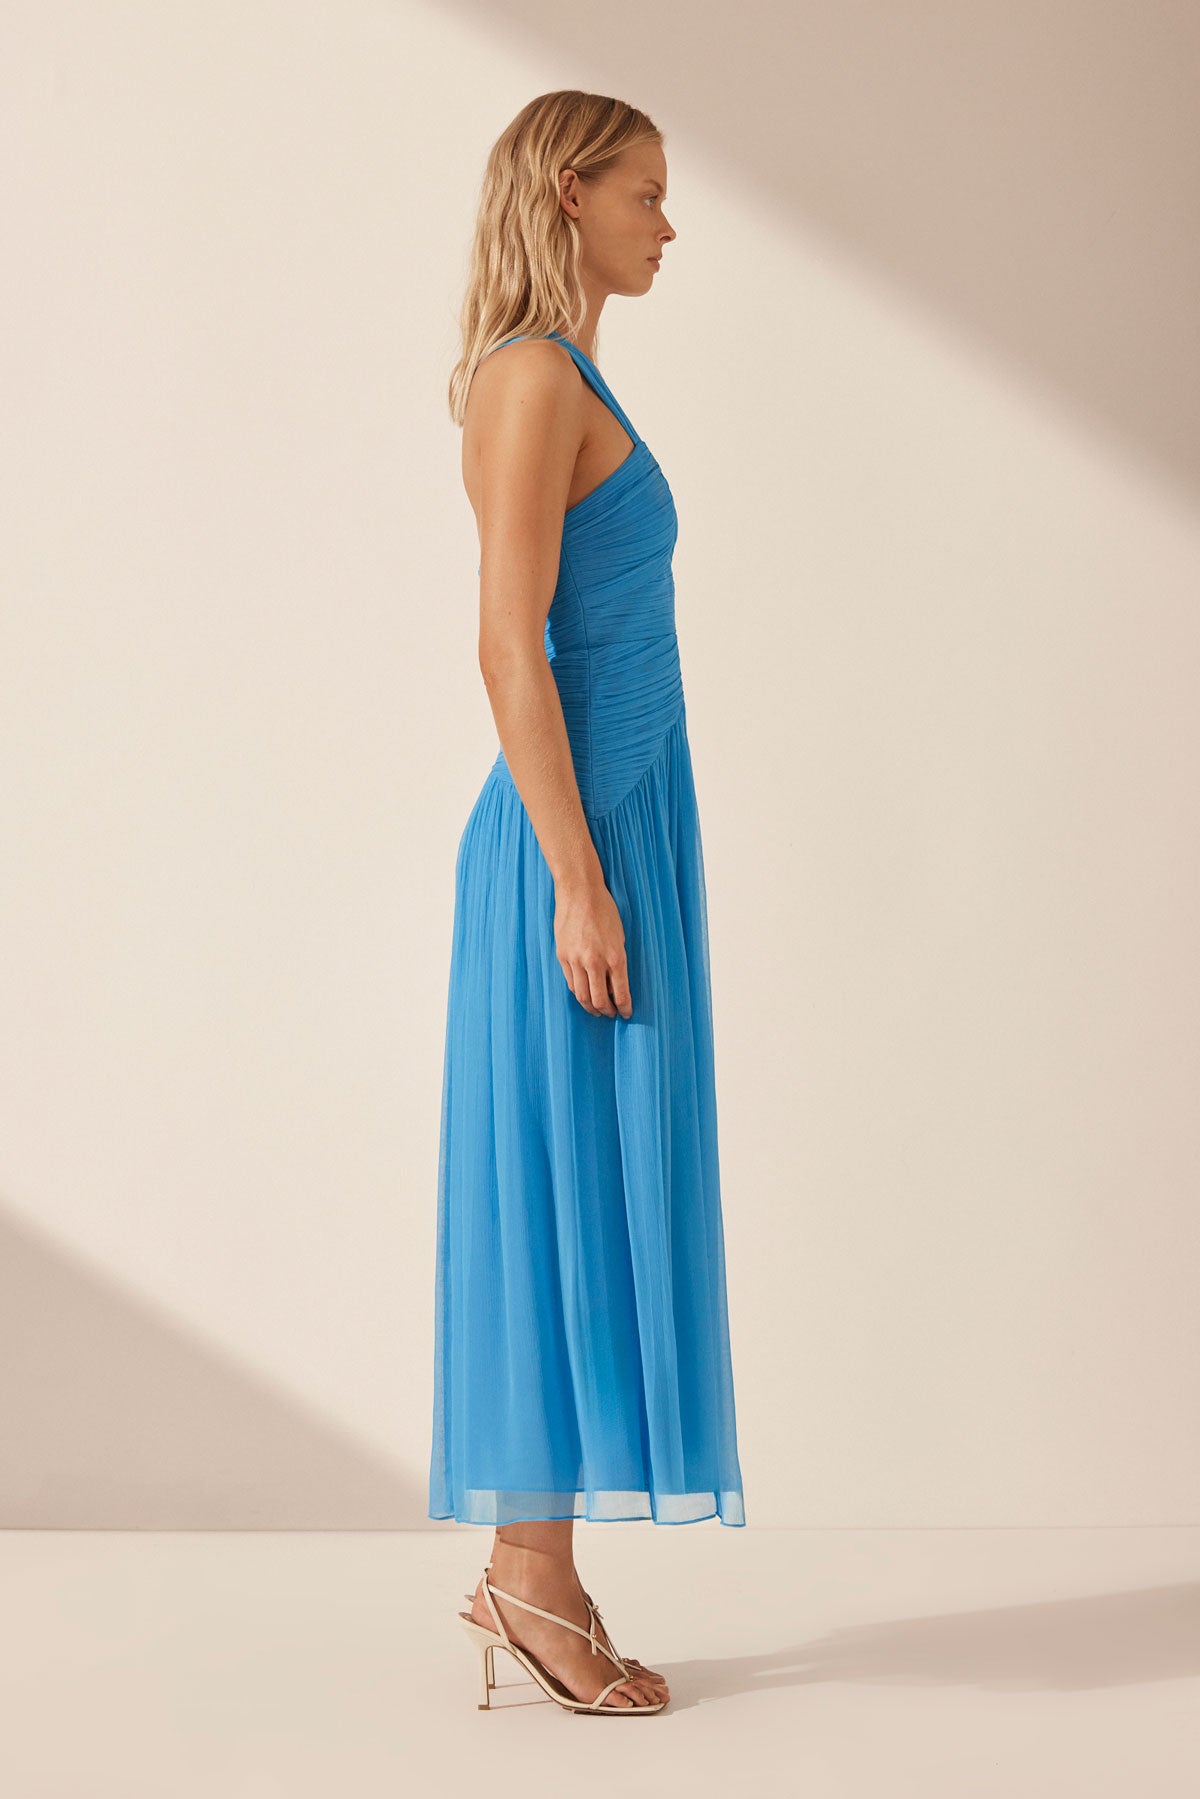 Shona Joy | Margot One Shoulder Midi Dress